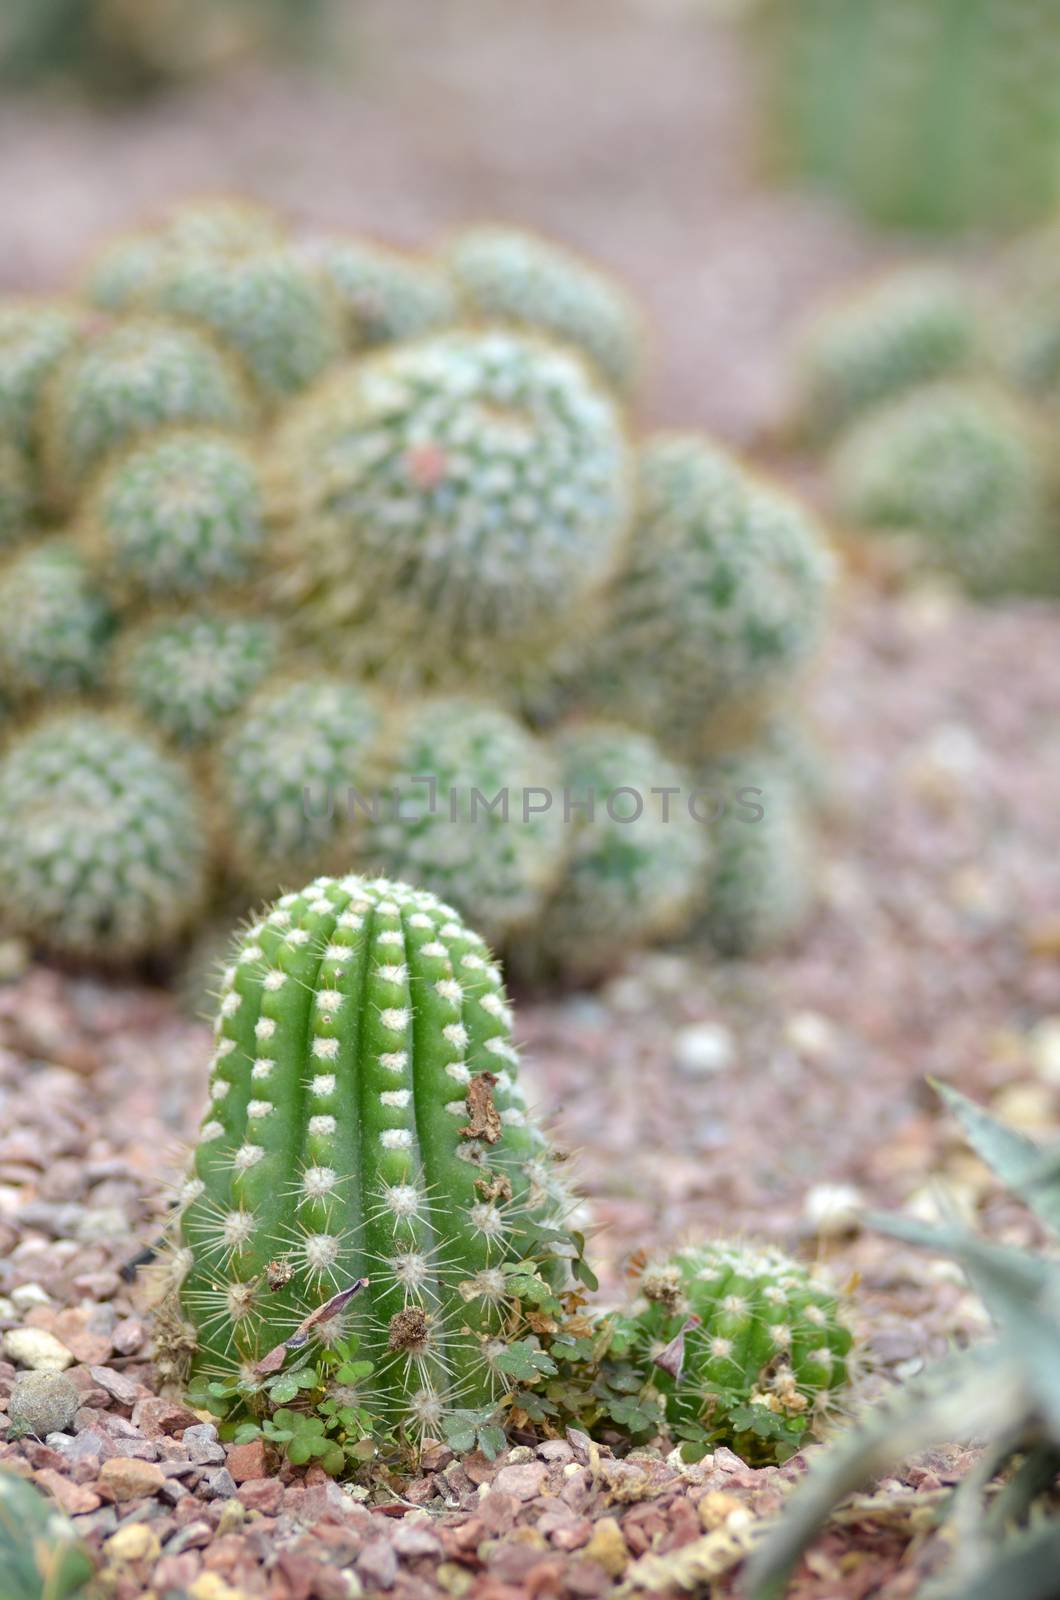 Cactus in a cactus garden of a park